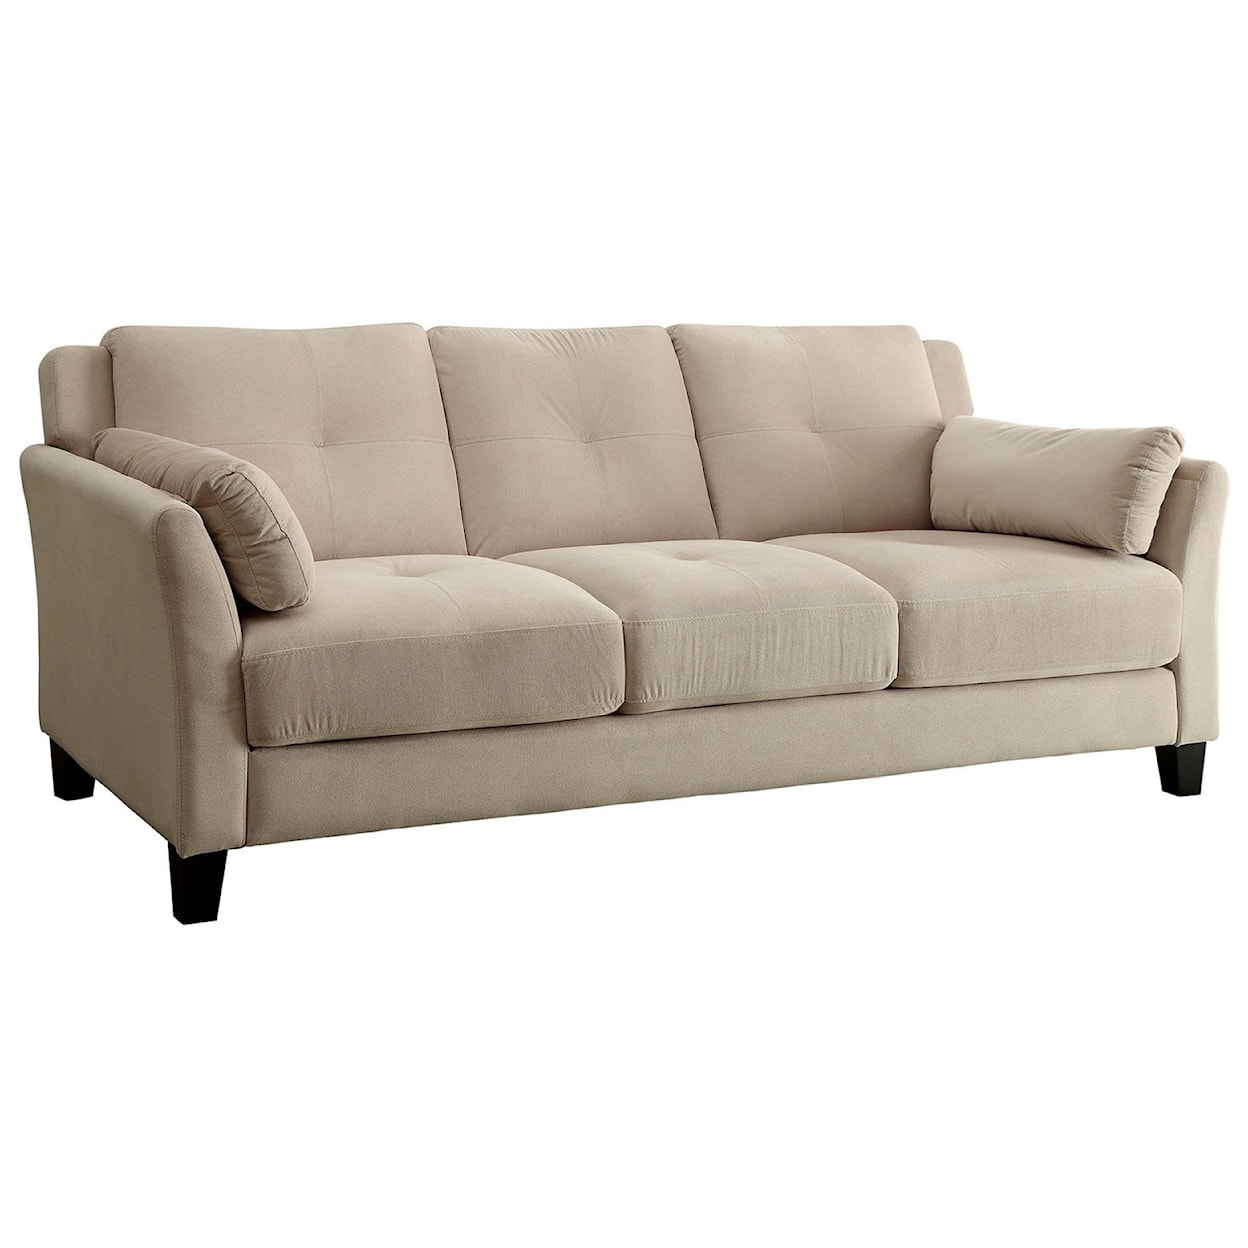 Furniture of America Ysabel Sofa